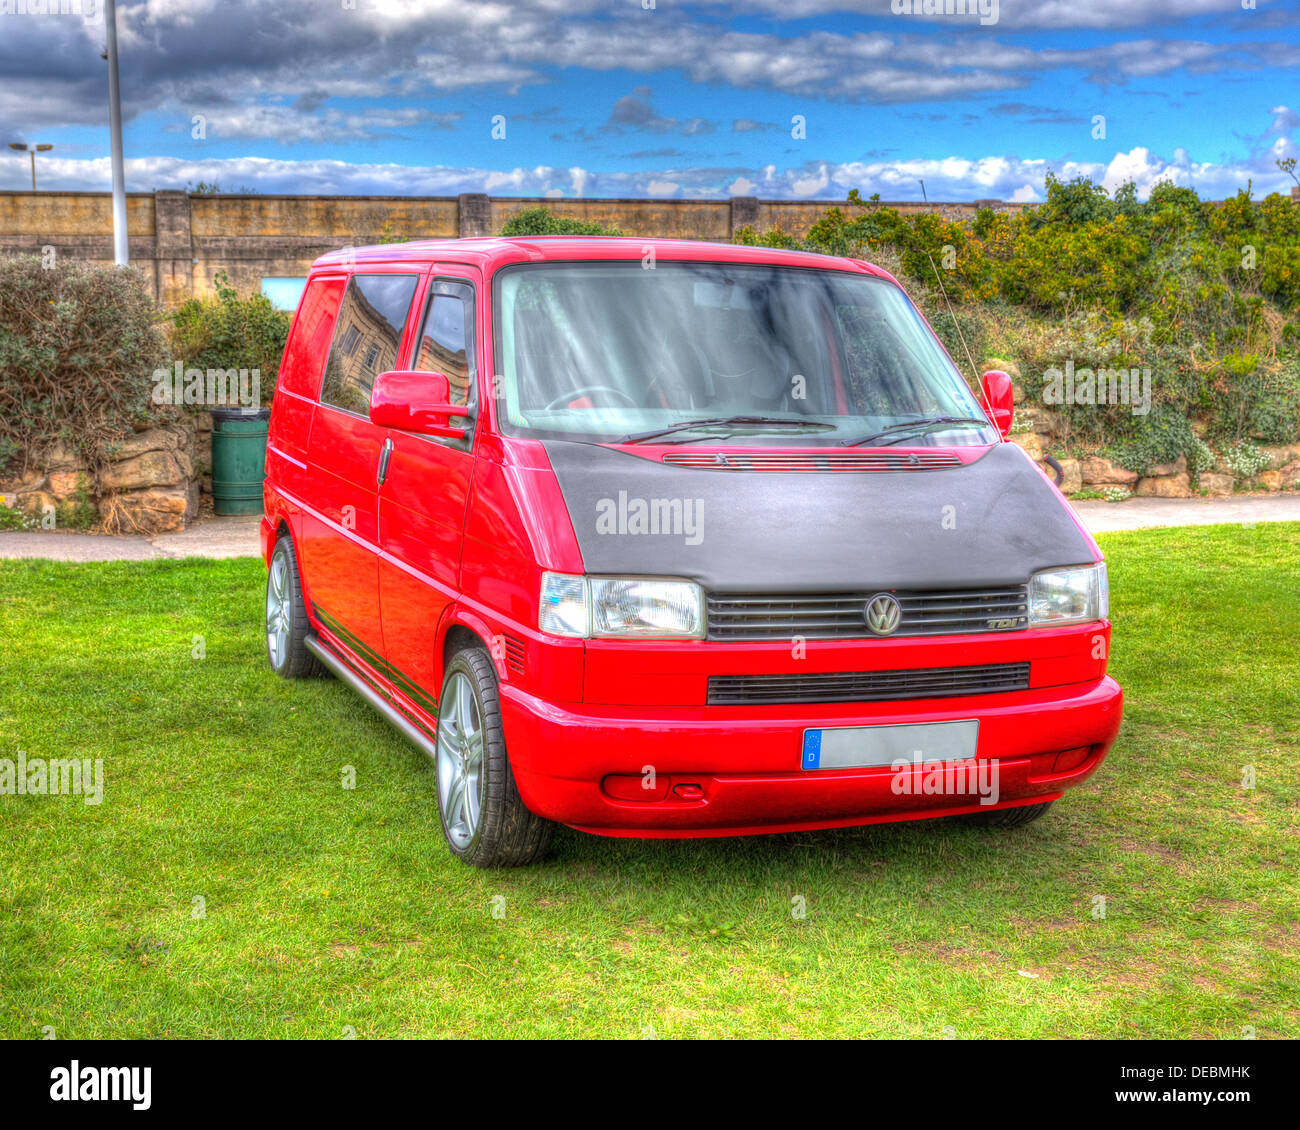 Volkswagen VW T4 rouge van jantes aluminium et bleu ciel comme la peinture dans HDR Banque D'Images